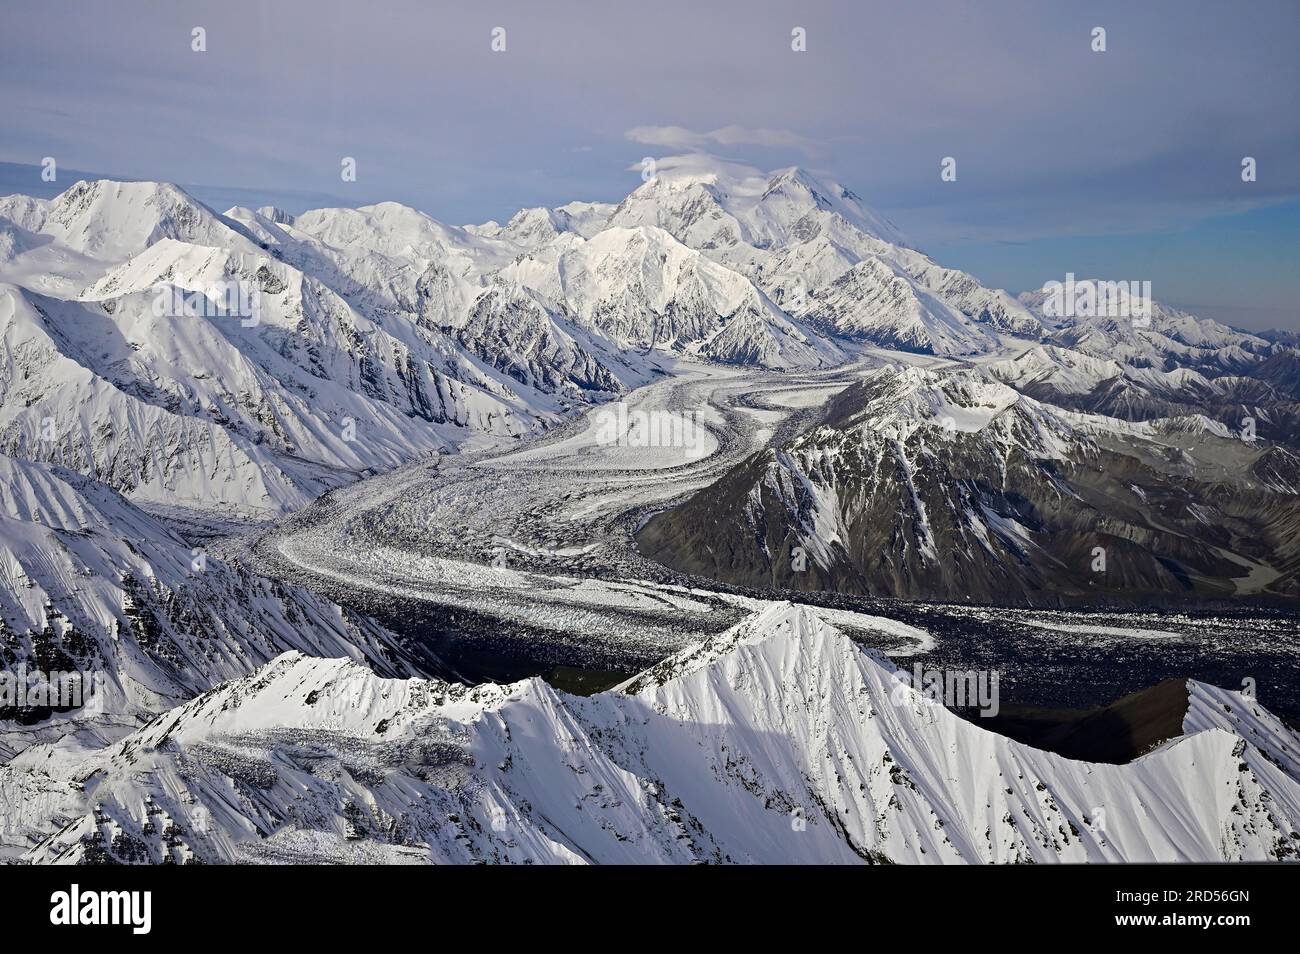 Vue aérienne de la chaîne de montagnes de l'Alaska avec une vue sur Denali avec le glacier Muldrow, Alaska, USA Banque D'Images